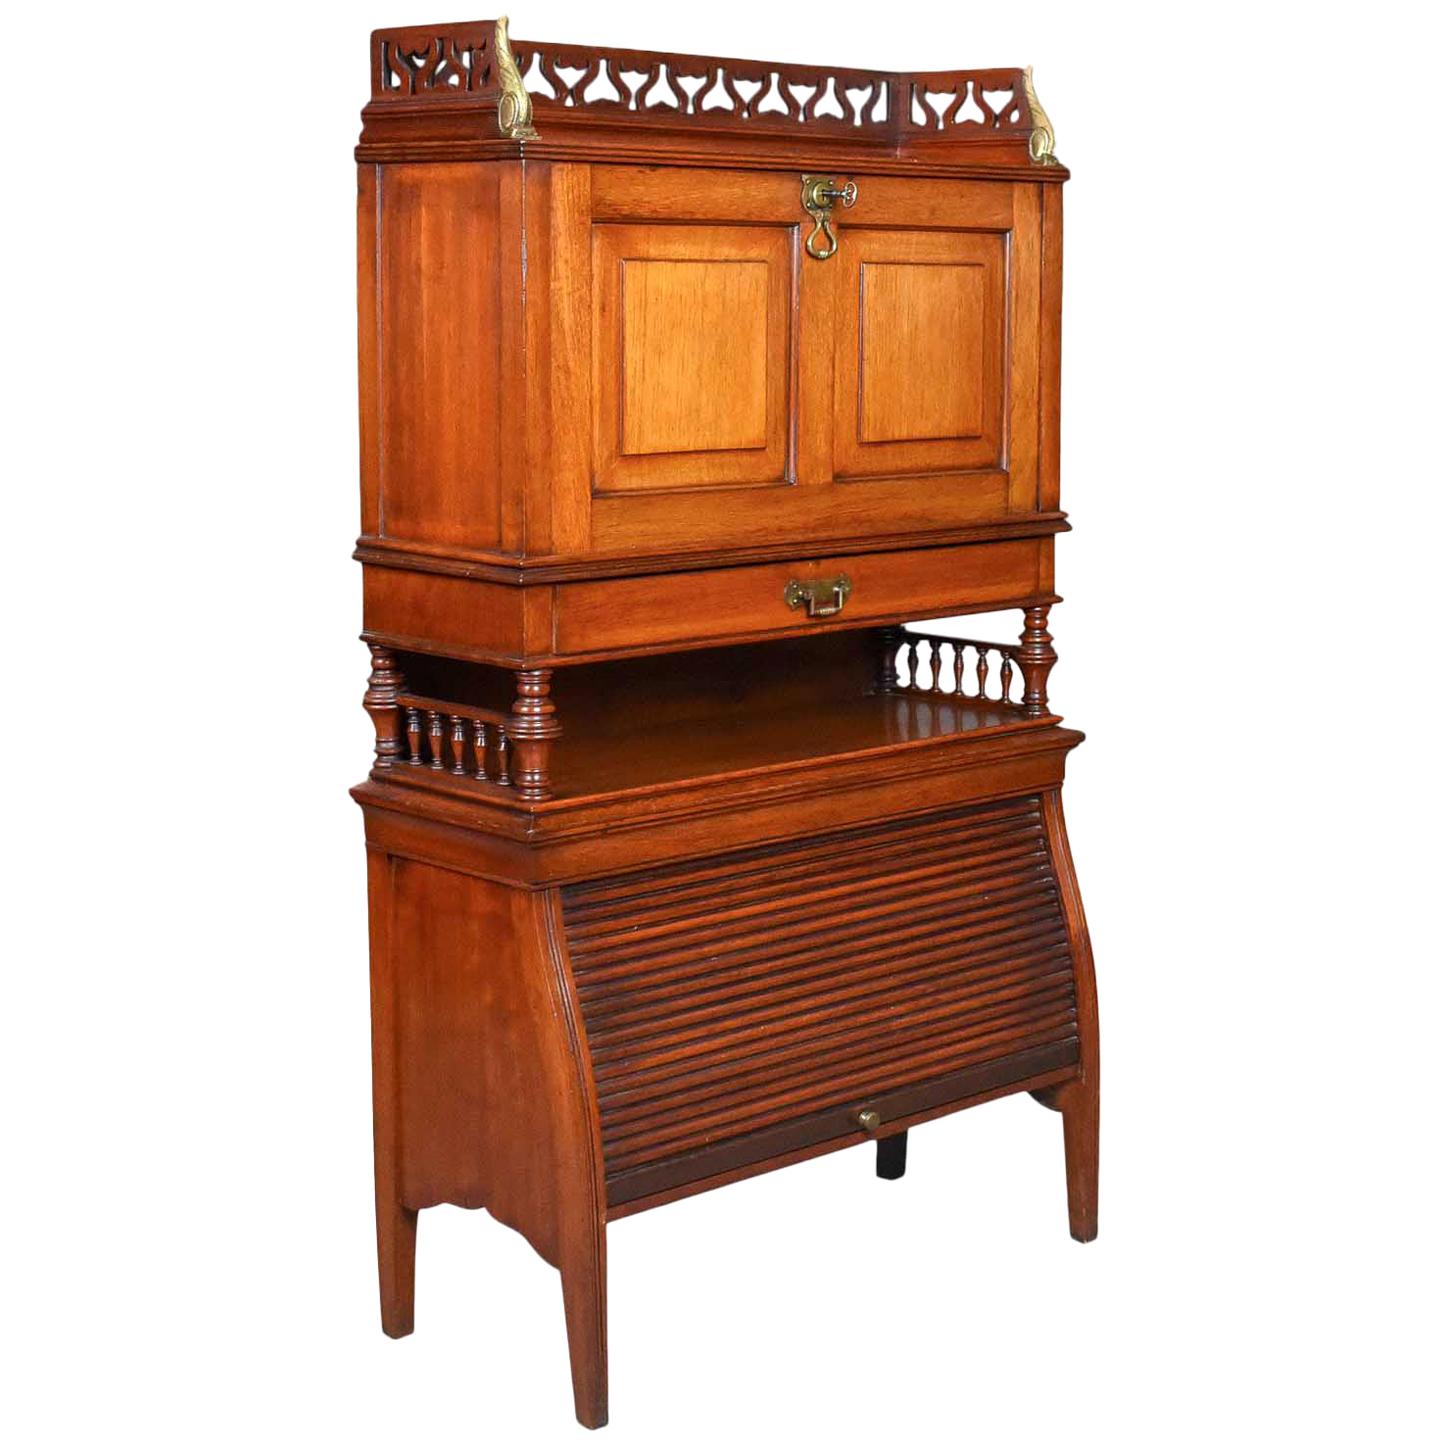 Antique Bureau Cabinet, English, Edwardian, Walnut Cupboard, circa 1910